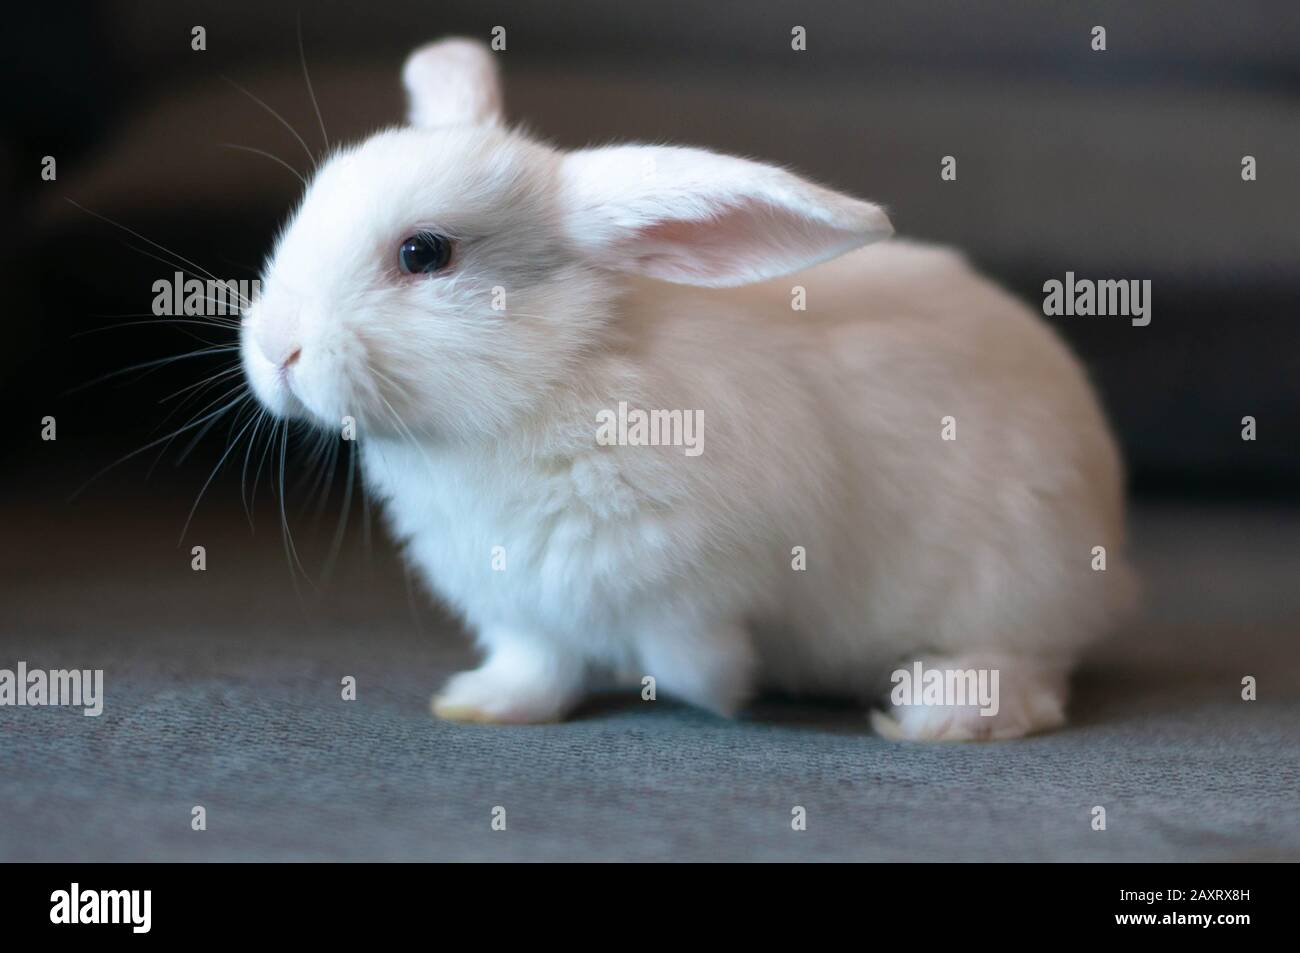 Ein kleines weißes Kaninchen sitzt auf einem schwarzen Teppich Stockfoto